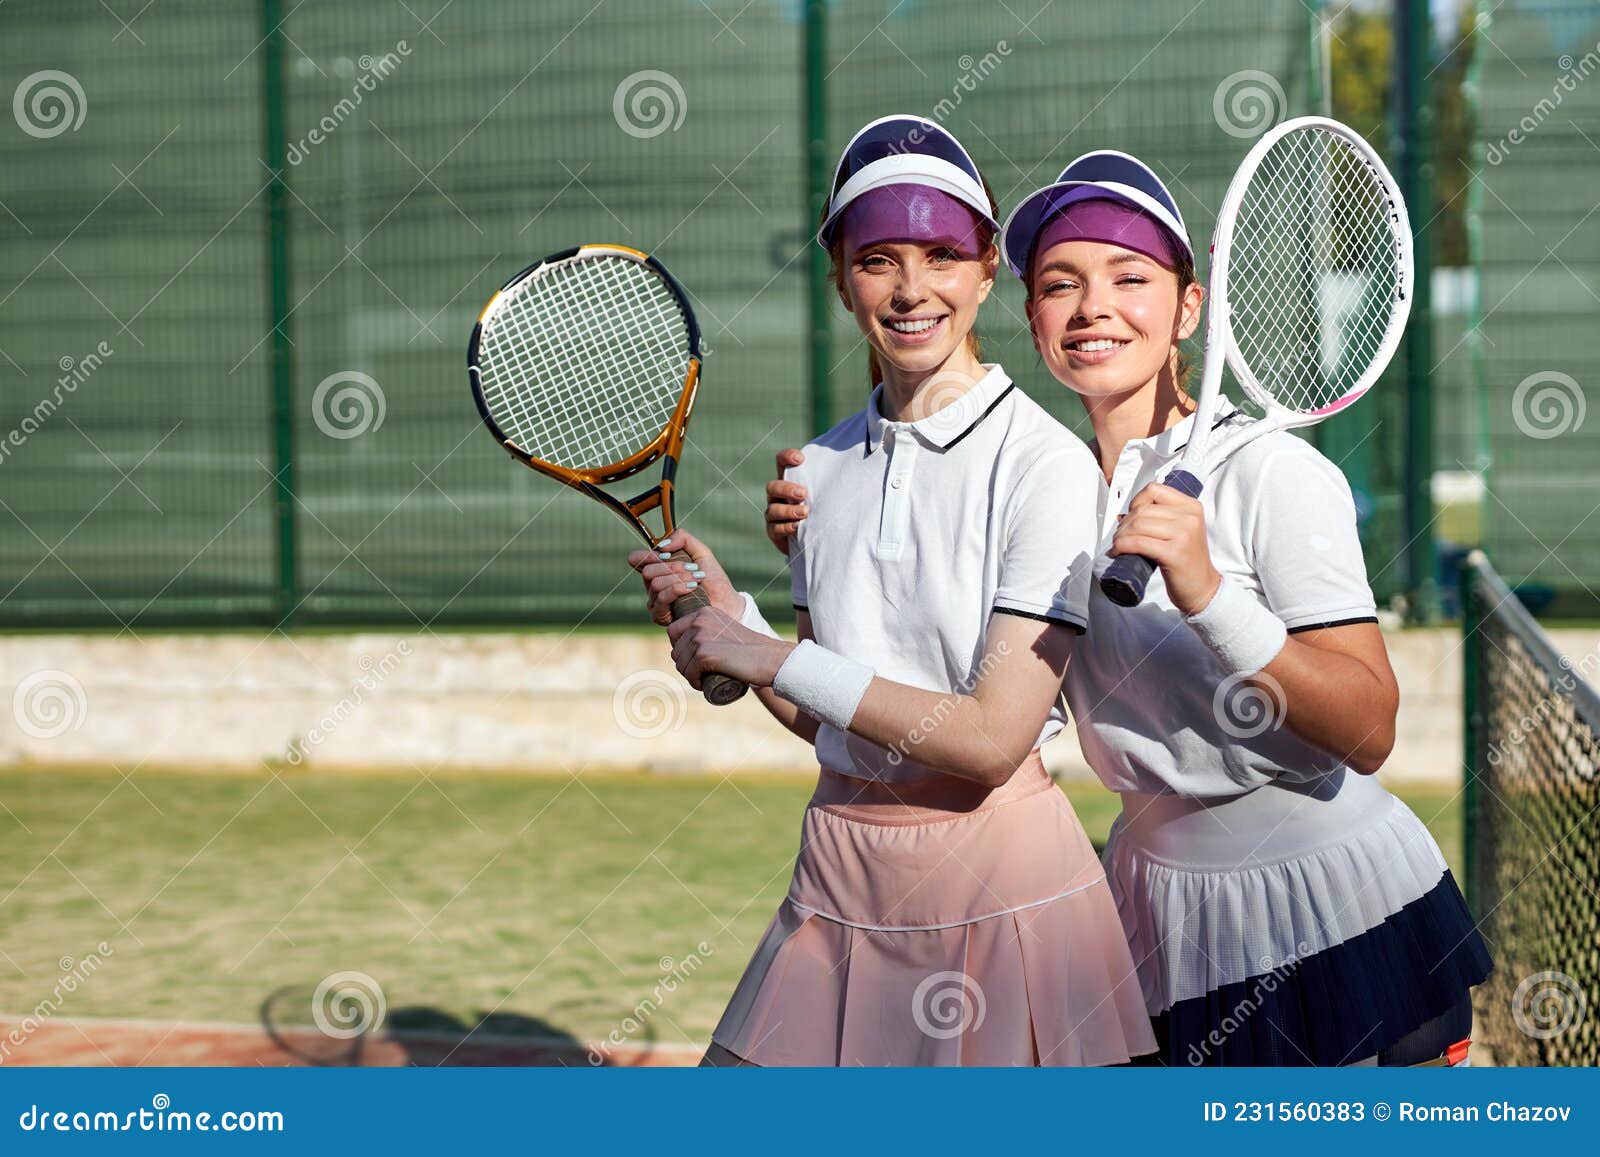 Sluiting wervelkolom Andere plaatsen Twee Opgewonden Caucasiaanse Vrouwen in De Rechtbank. Vrouwen in  Sportuniform Met Tennisracket Stock Afbeelding - Image of amerikaans,  genieten: 231560383